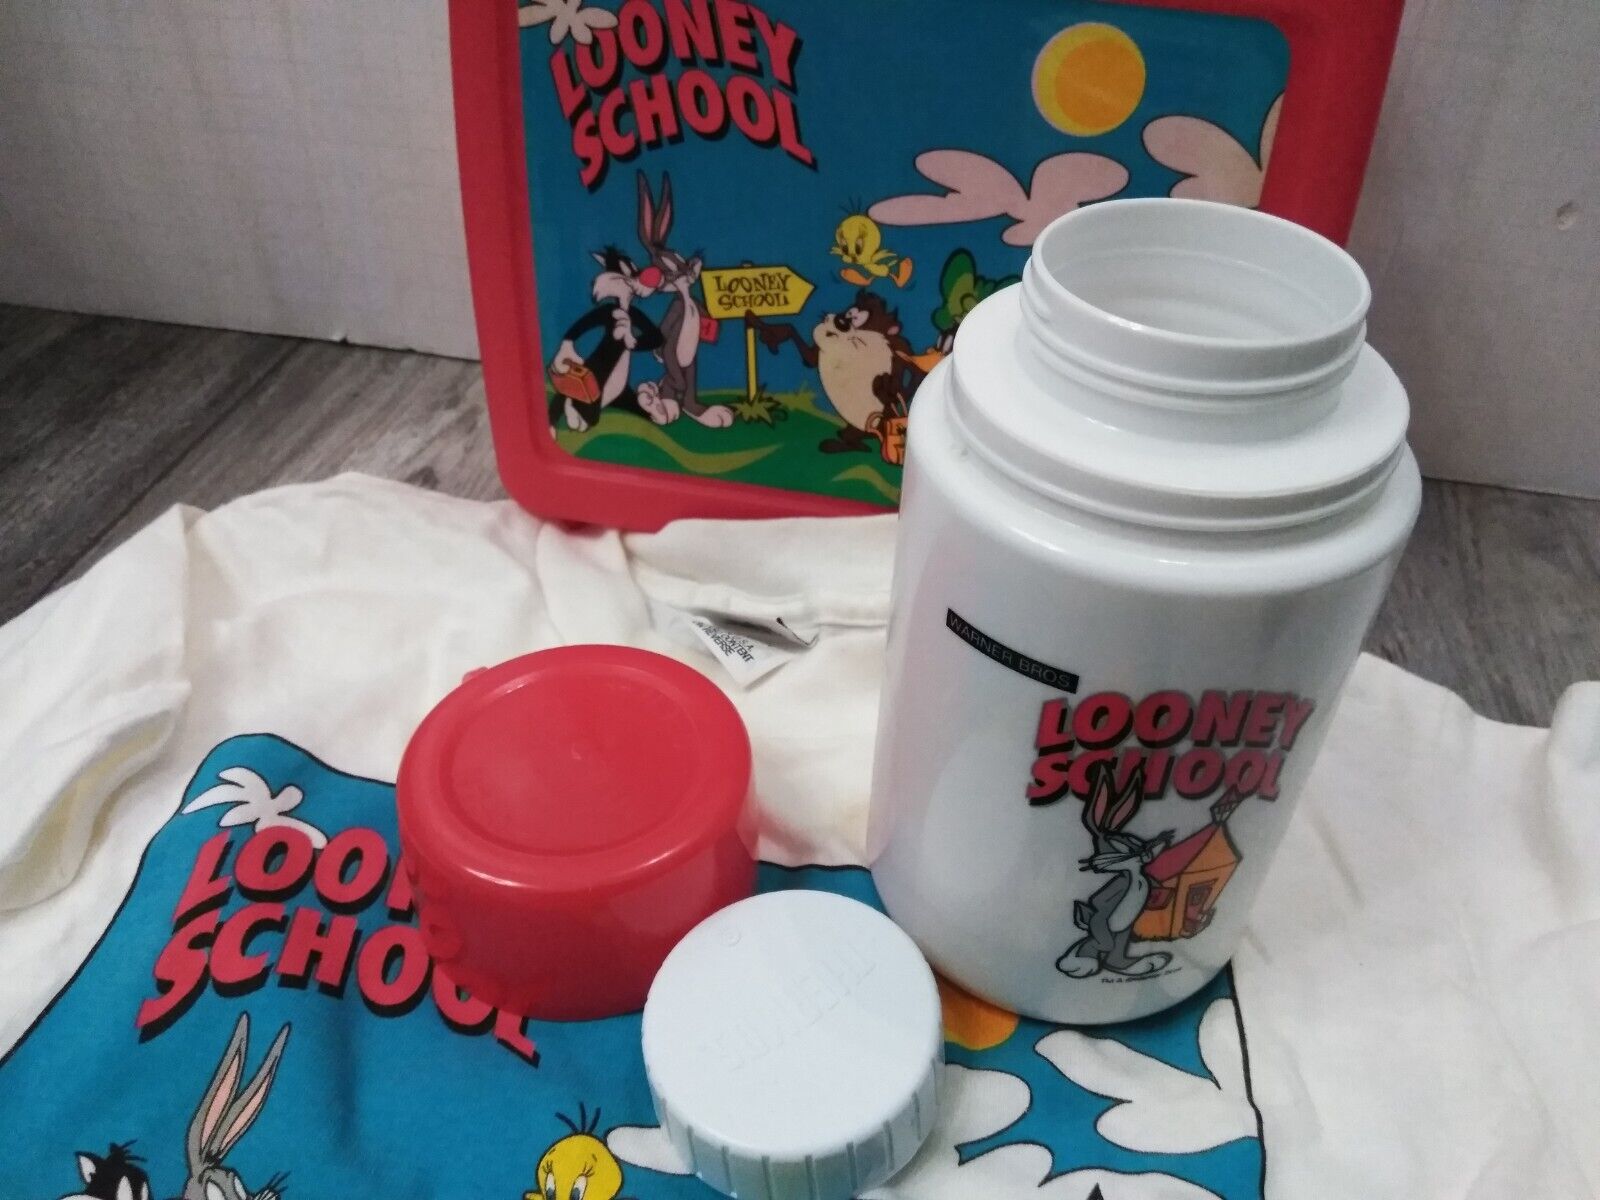 N.O.S. WARNER BROS. 1990'S Looney Tunes, Looney School RED Lunchbox W/ T-SHIRT Thermos - фотография #11